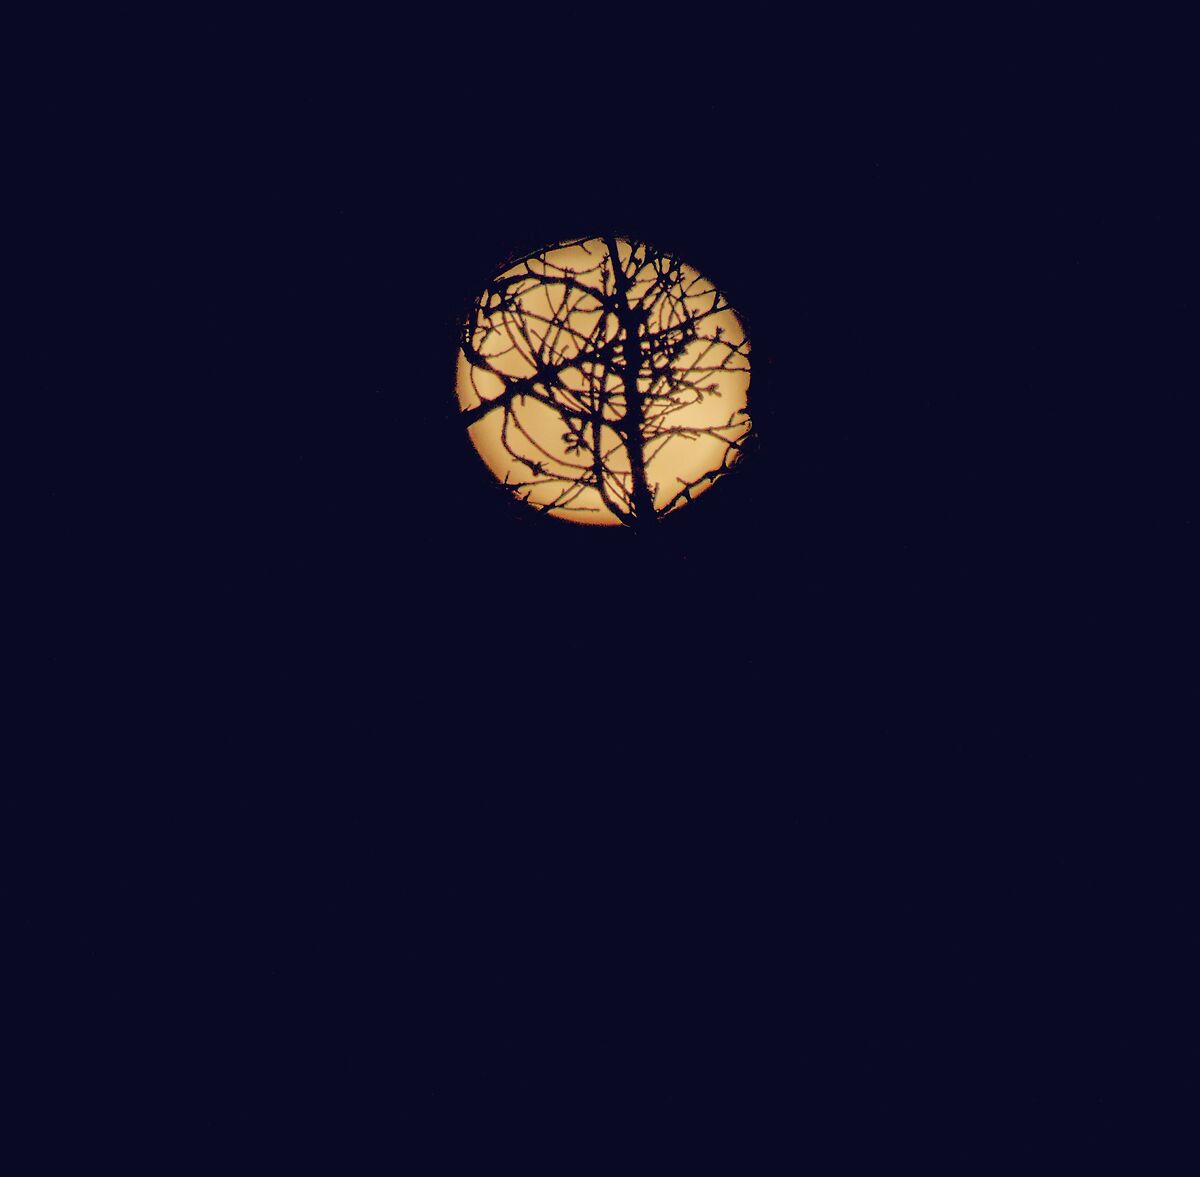 Luna imbrigliata nei rami di un albero qualsiasi...